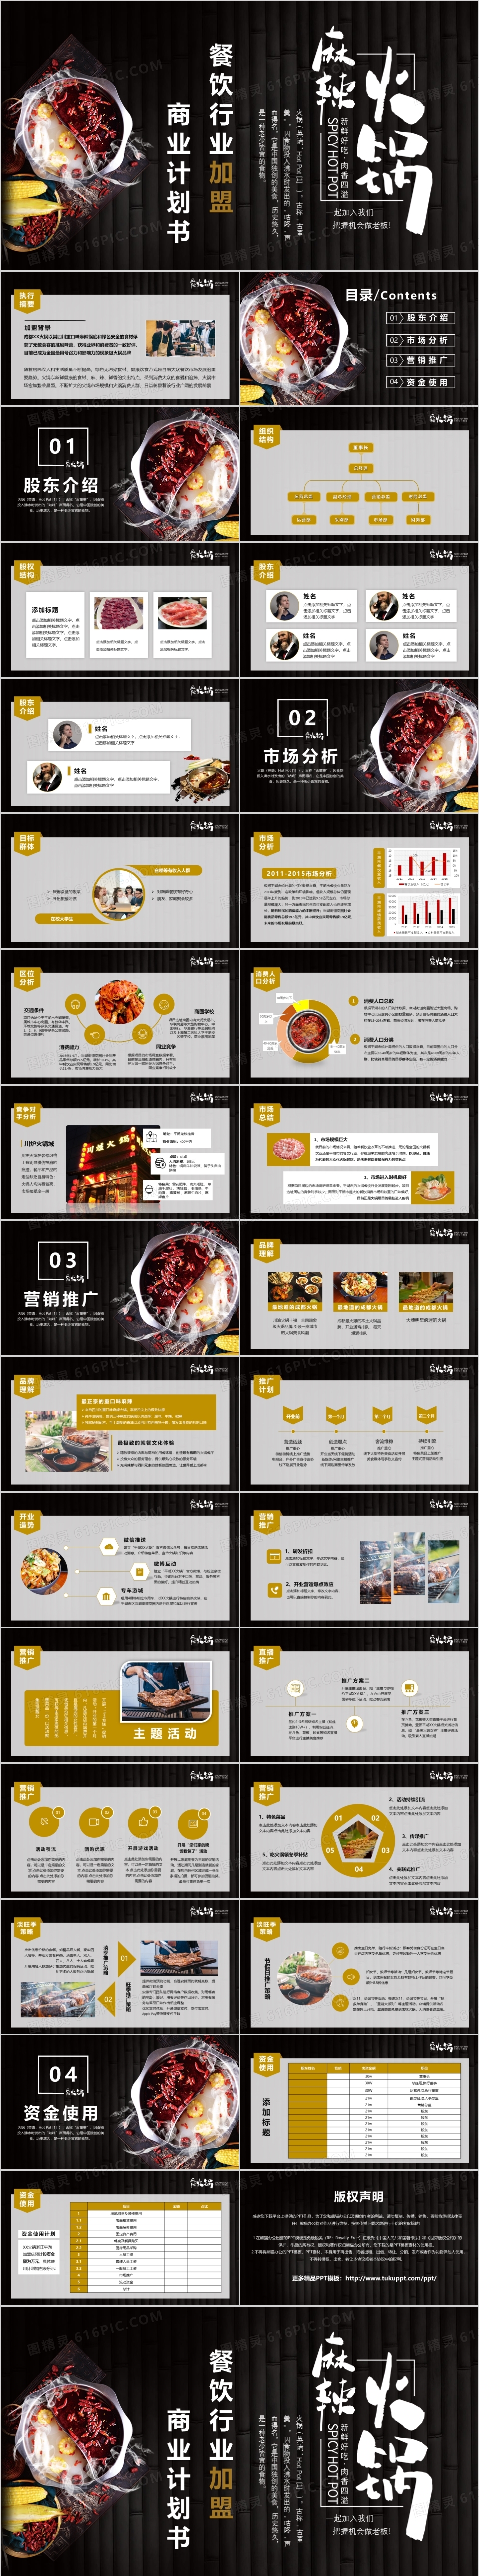 火锅餐饮行业加盟商业计划书PPT模版